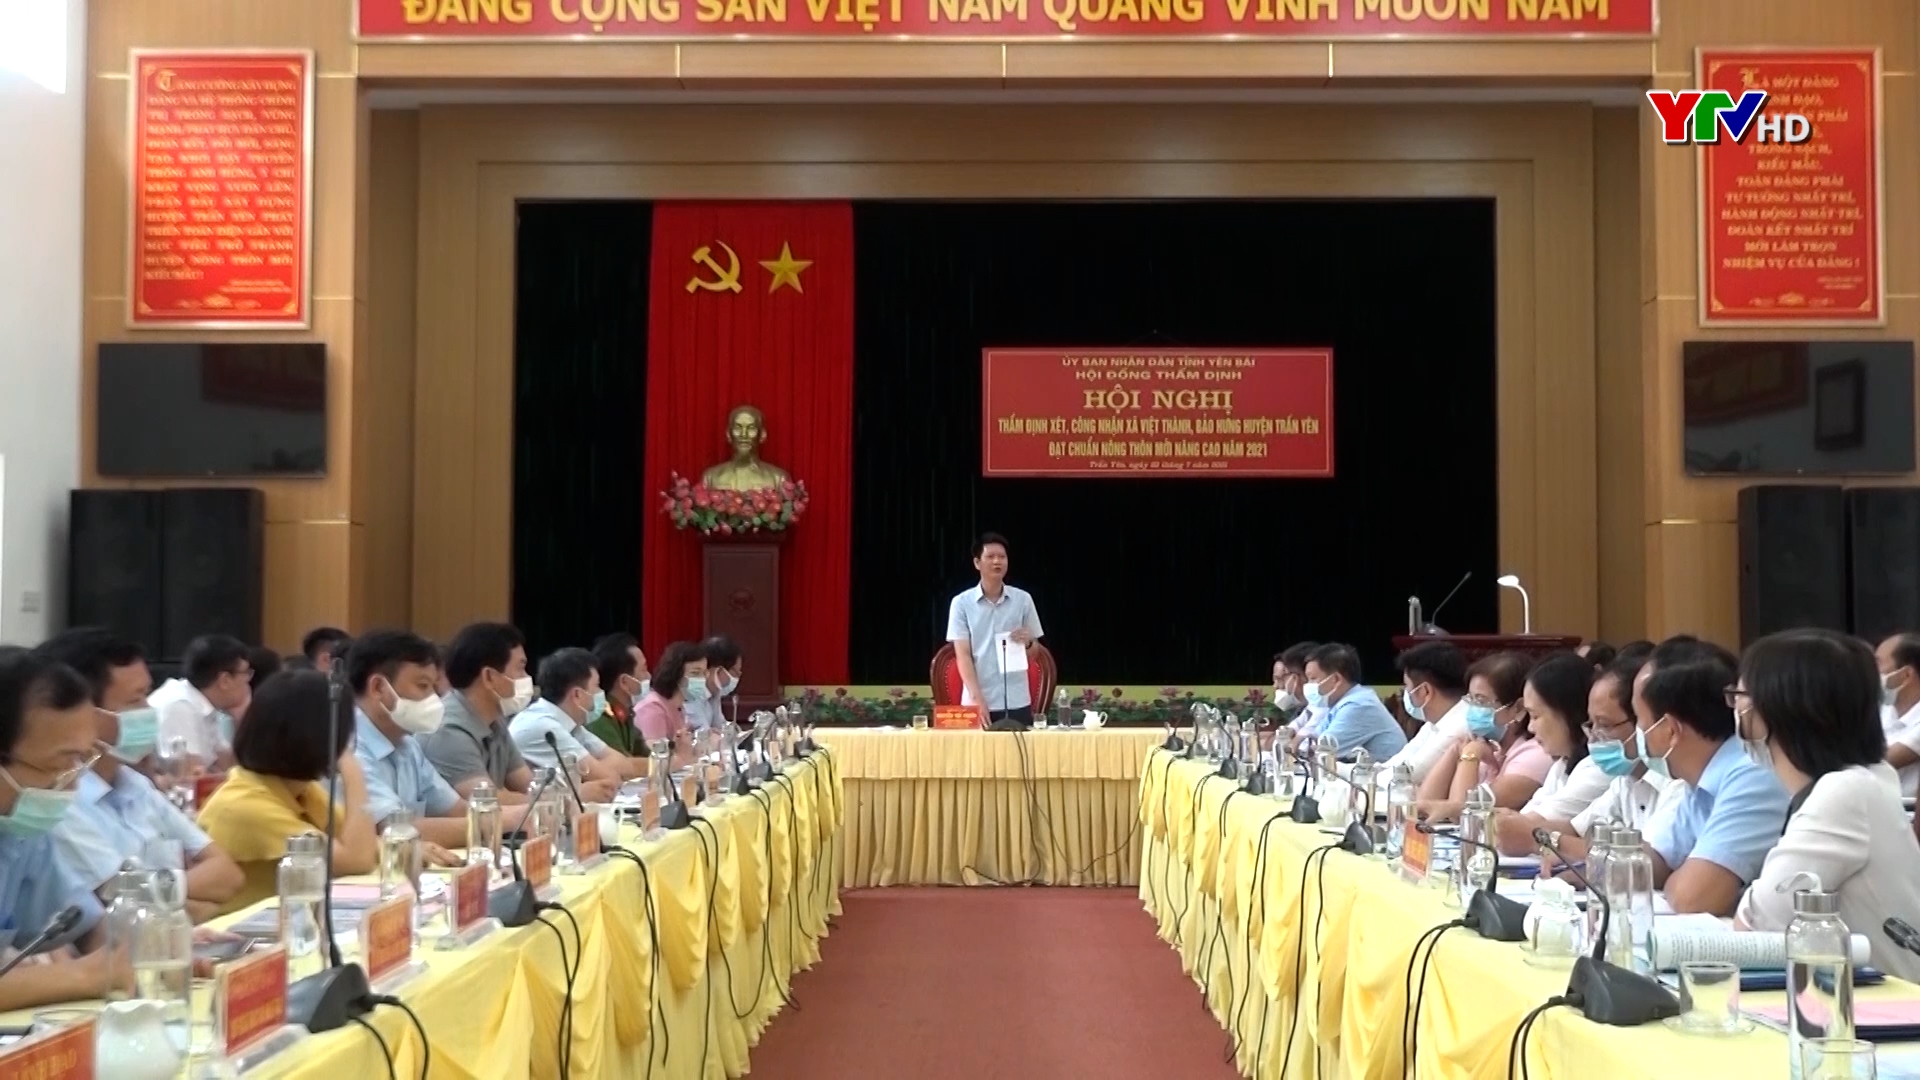 Hội nghị thẩm định các xã Việt Thành, Bảo Hưng, huyện Trấn Yên đạt chuẩn NTM nâng cao